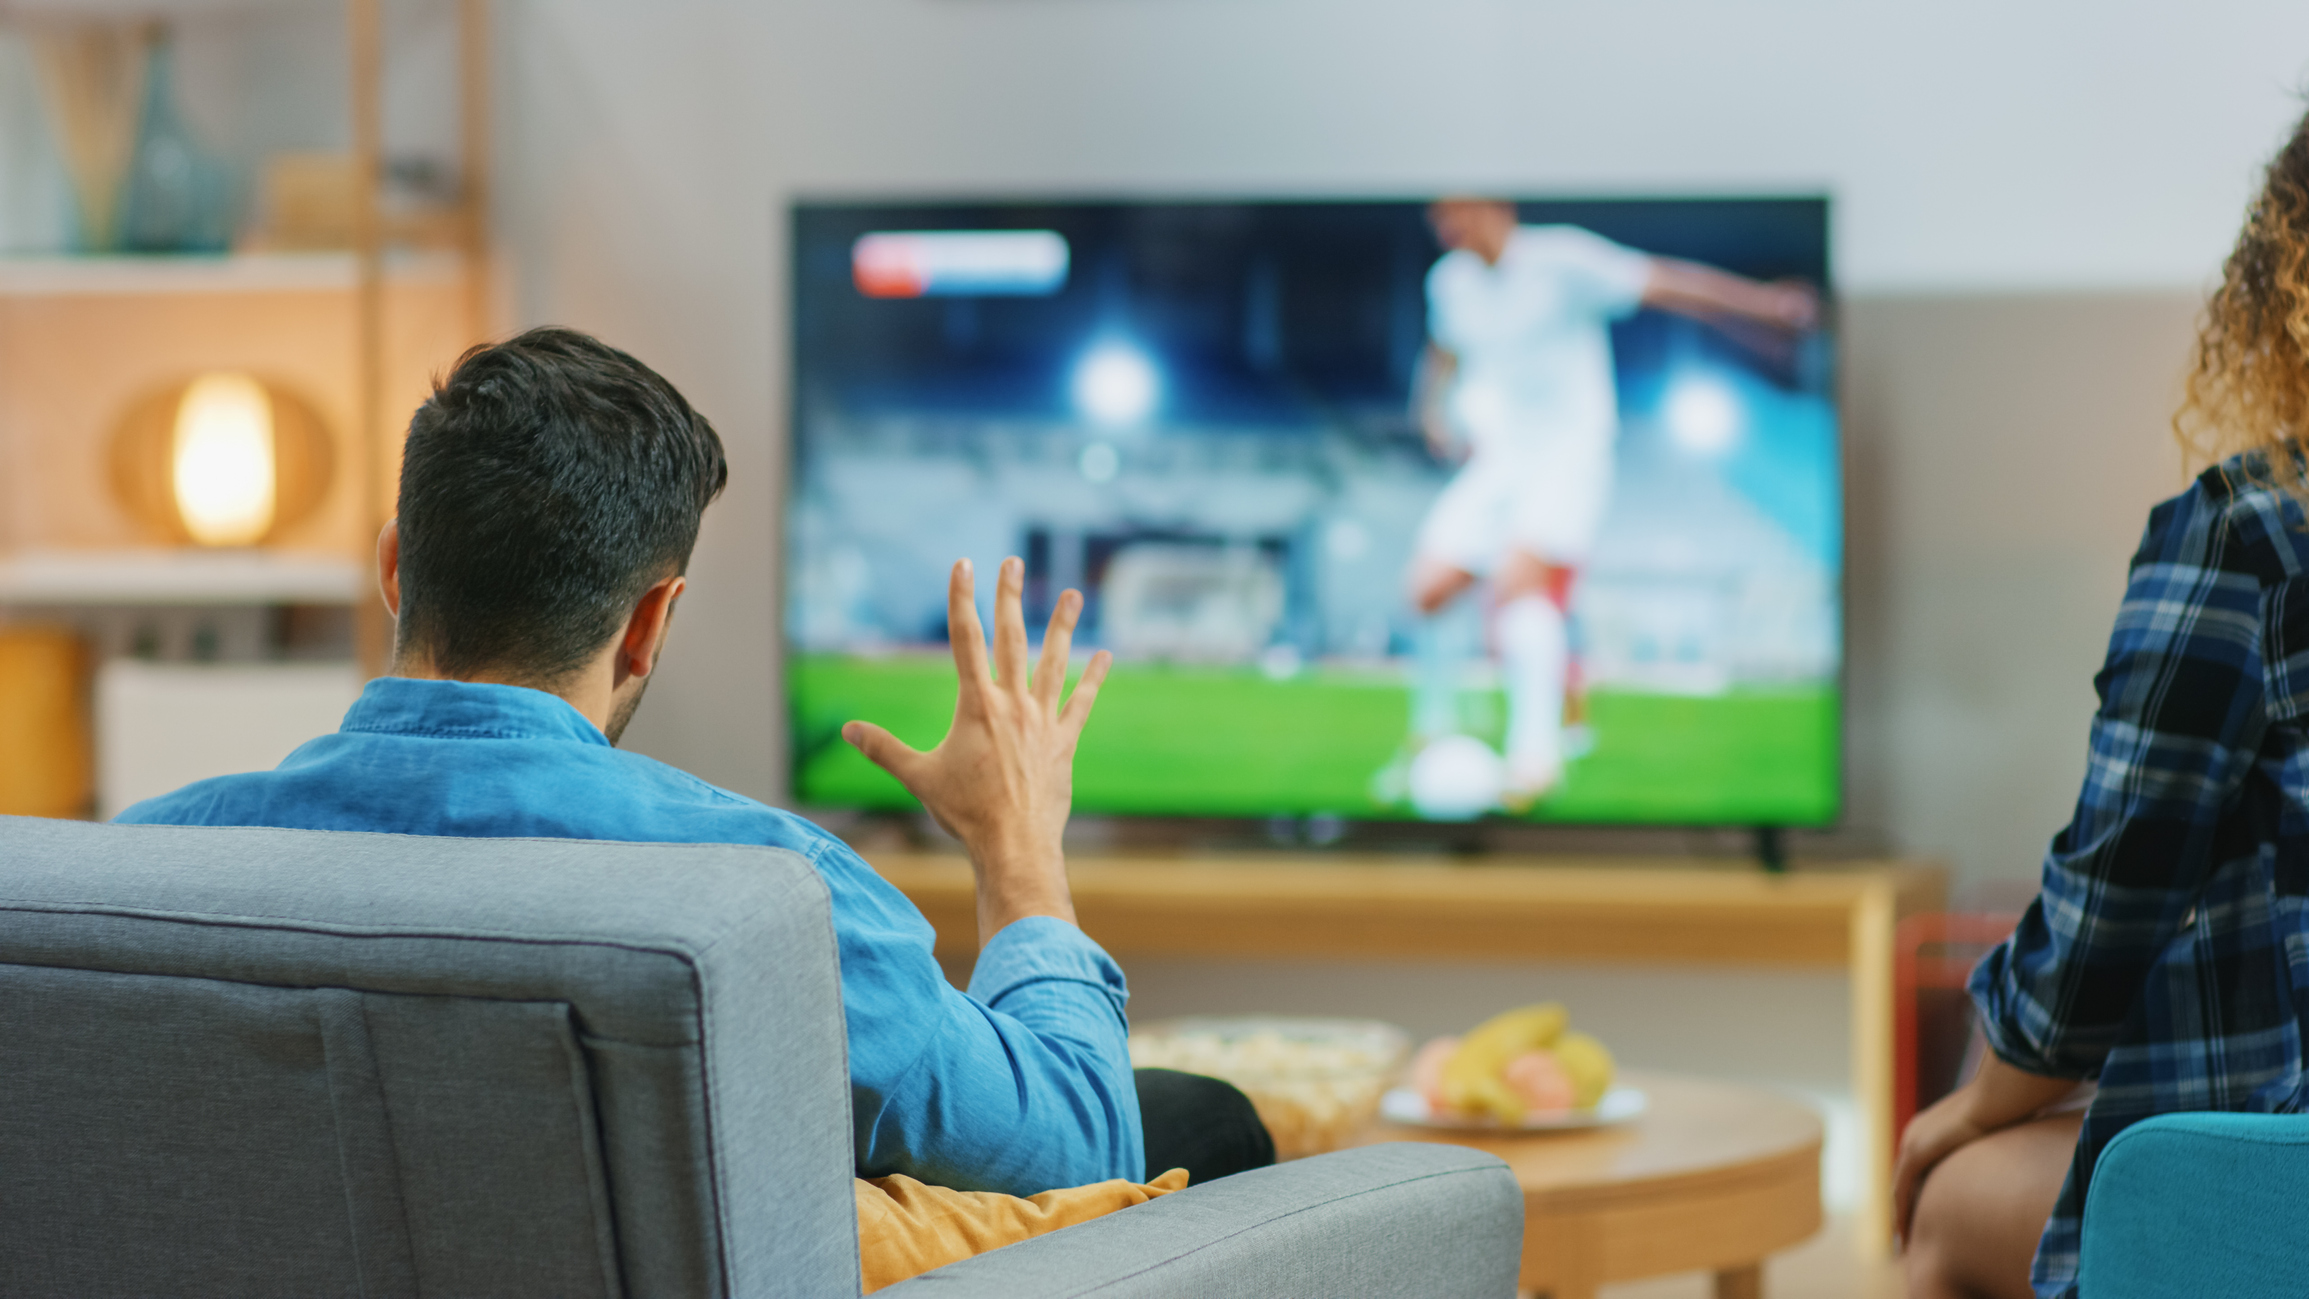 Droits TV du foot : Canal+, les dessous d'une revanche totale et implacable  - Le Parisien